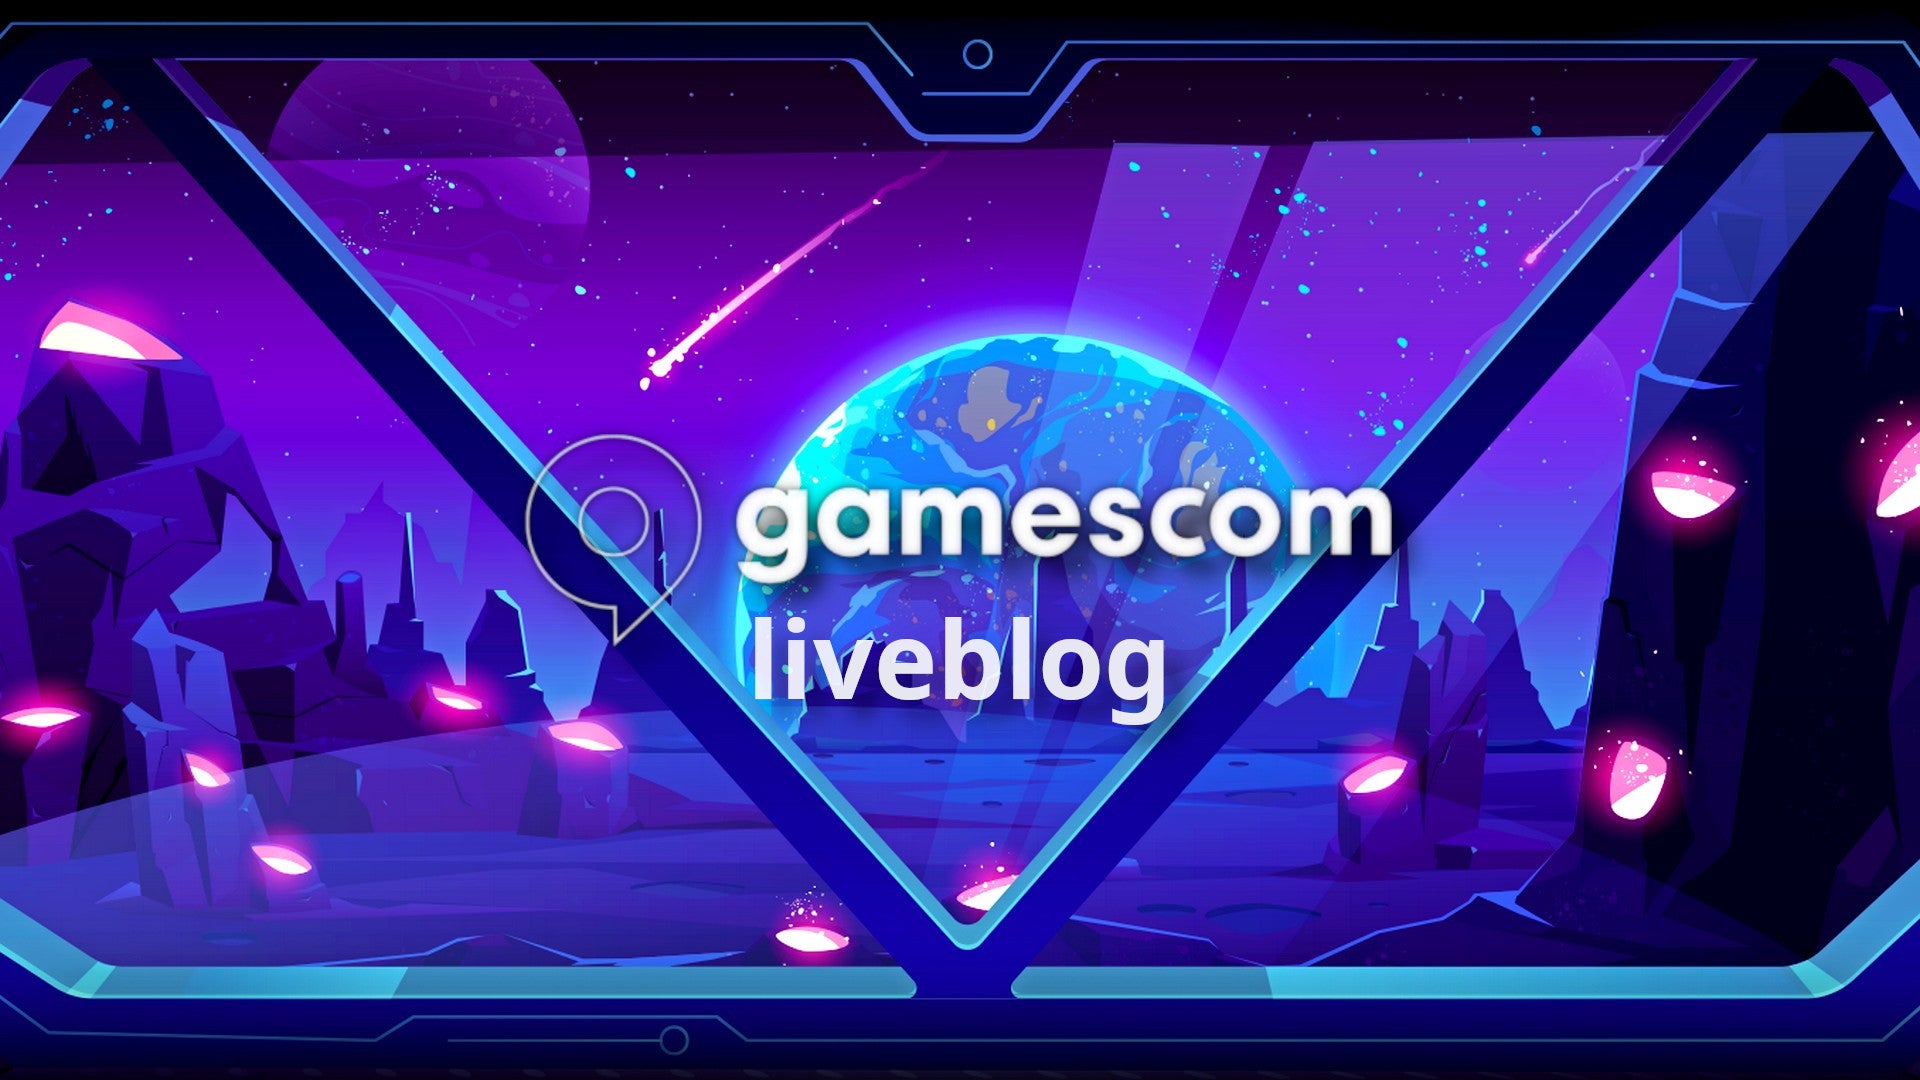 Bilder zu Der große gamescom 2022 Liveblog - Seht direkt, was auf der immer noch größten Games-Messe so passiert